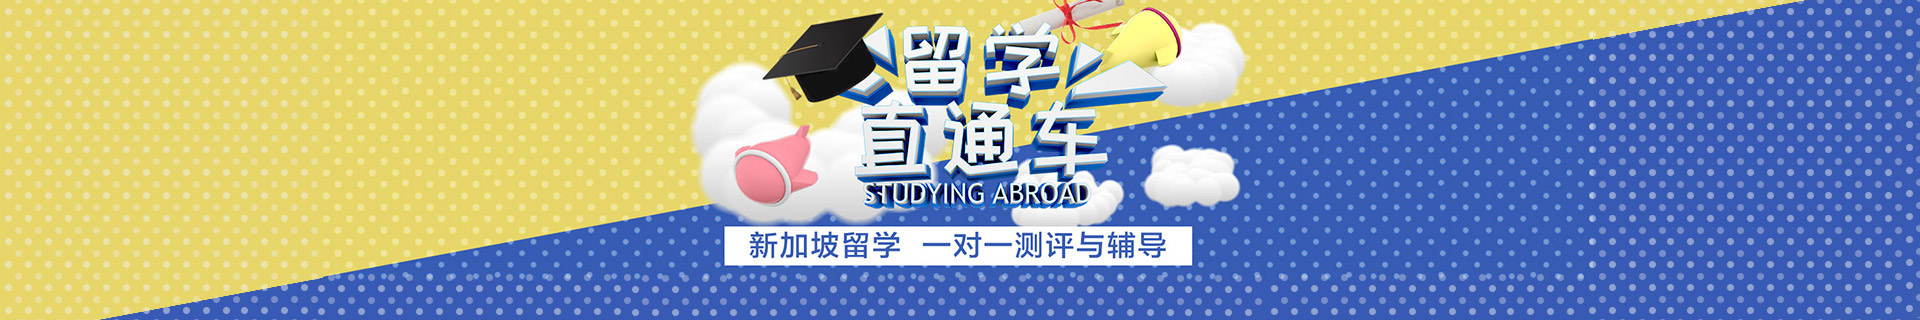 广州天河区美世教育留学机构